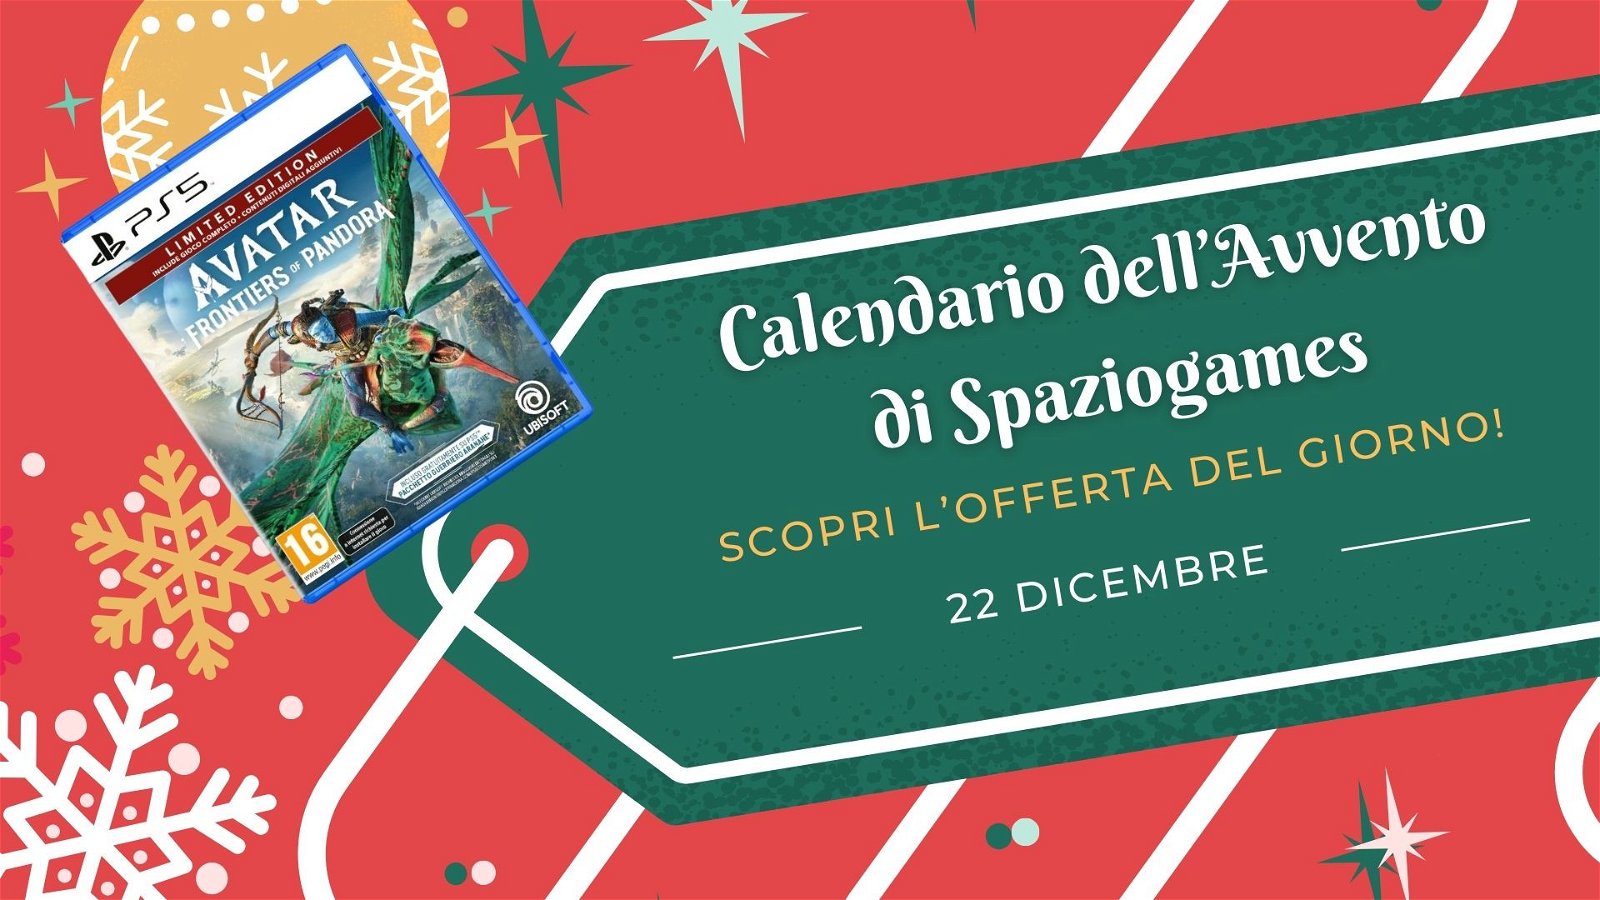 Calendario dell'avvento di Spaziogames: scopri l'offerta del 22 dicembre